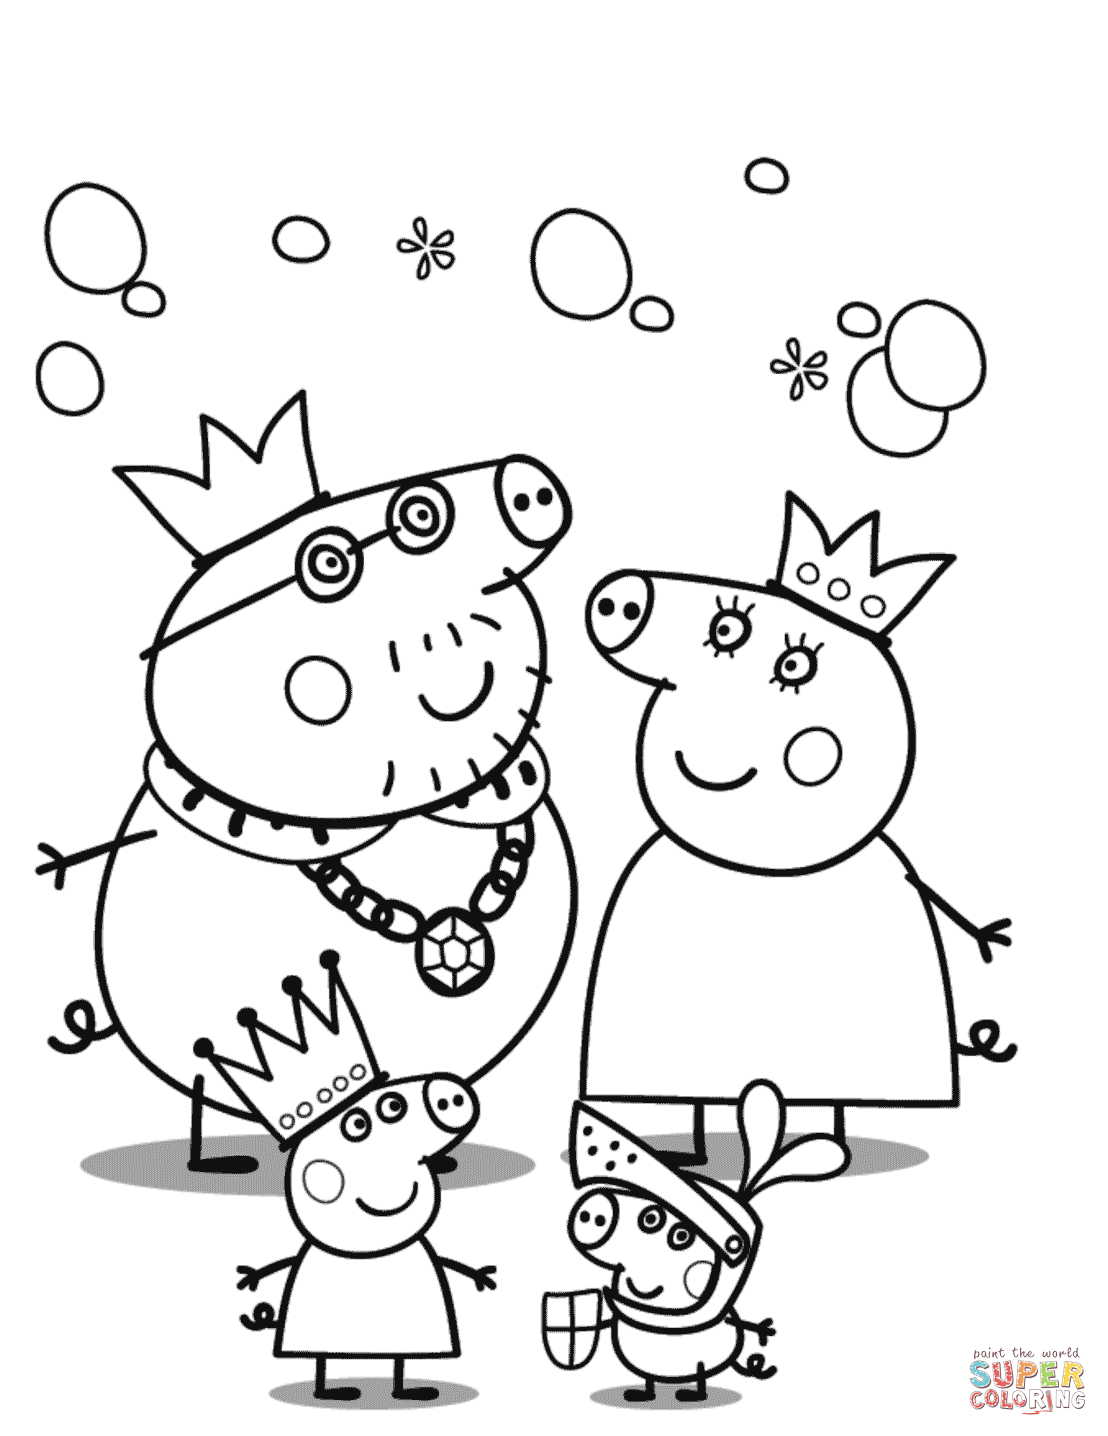 Mamá Cerdita de Peppa Pig: 10 dibujos para el Día de la Madre bonitos que puedes colorear y regalar